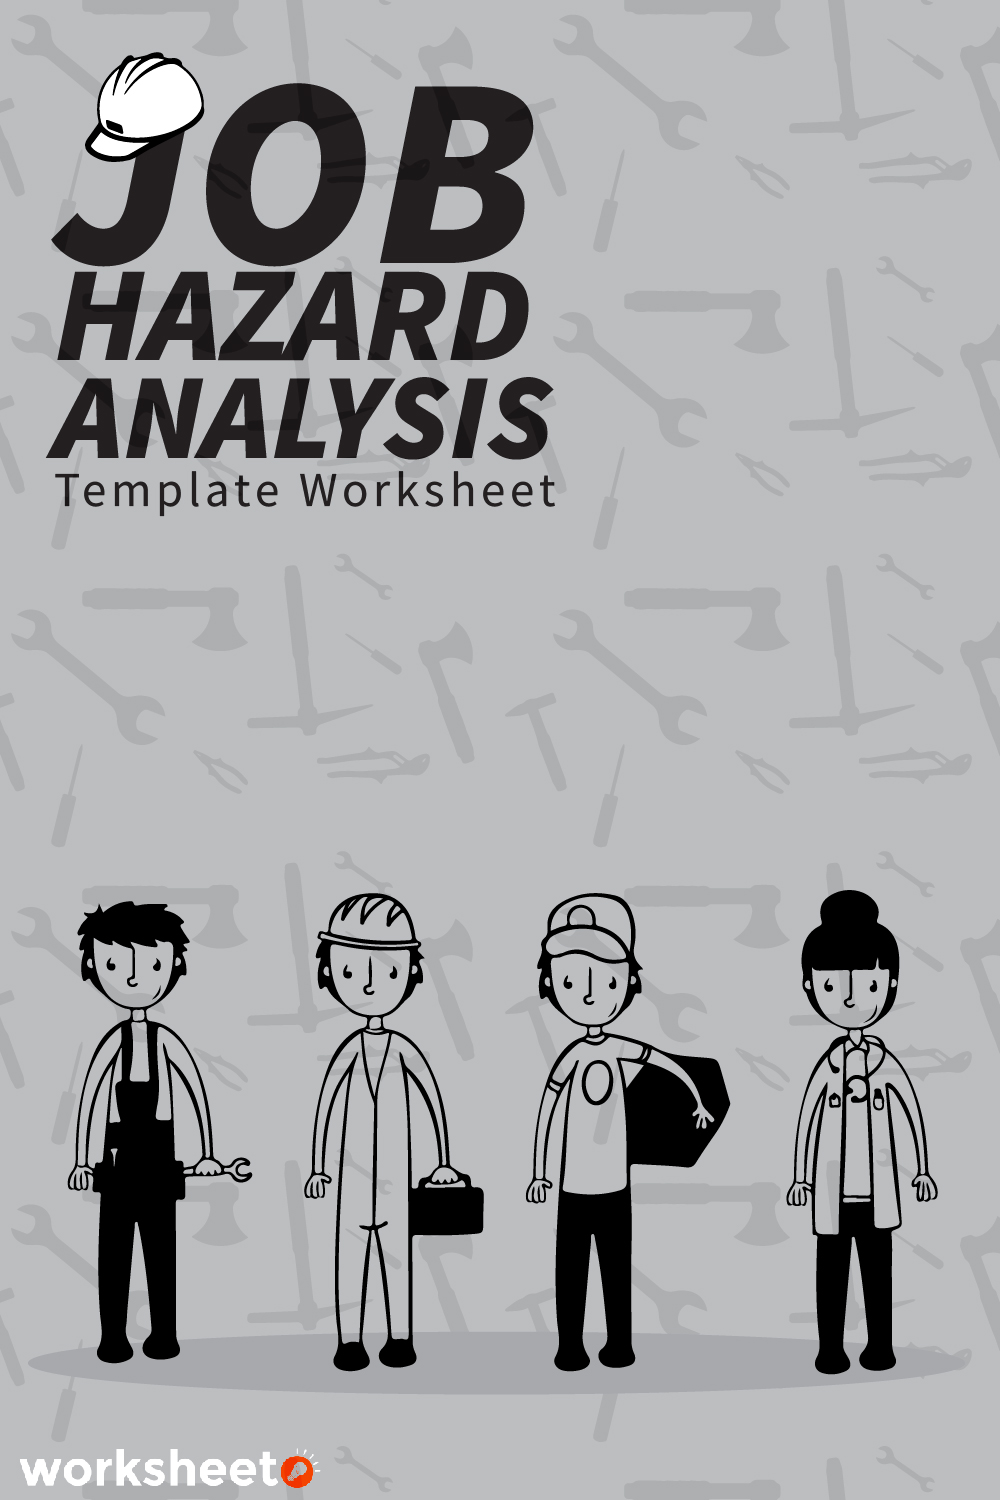 13 Images of Job Hazard Analysis Template Worksheet